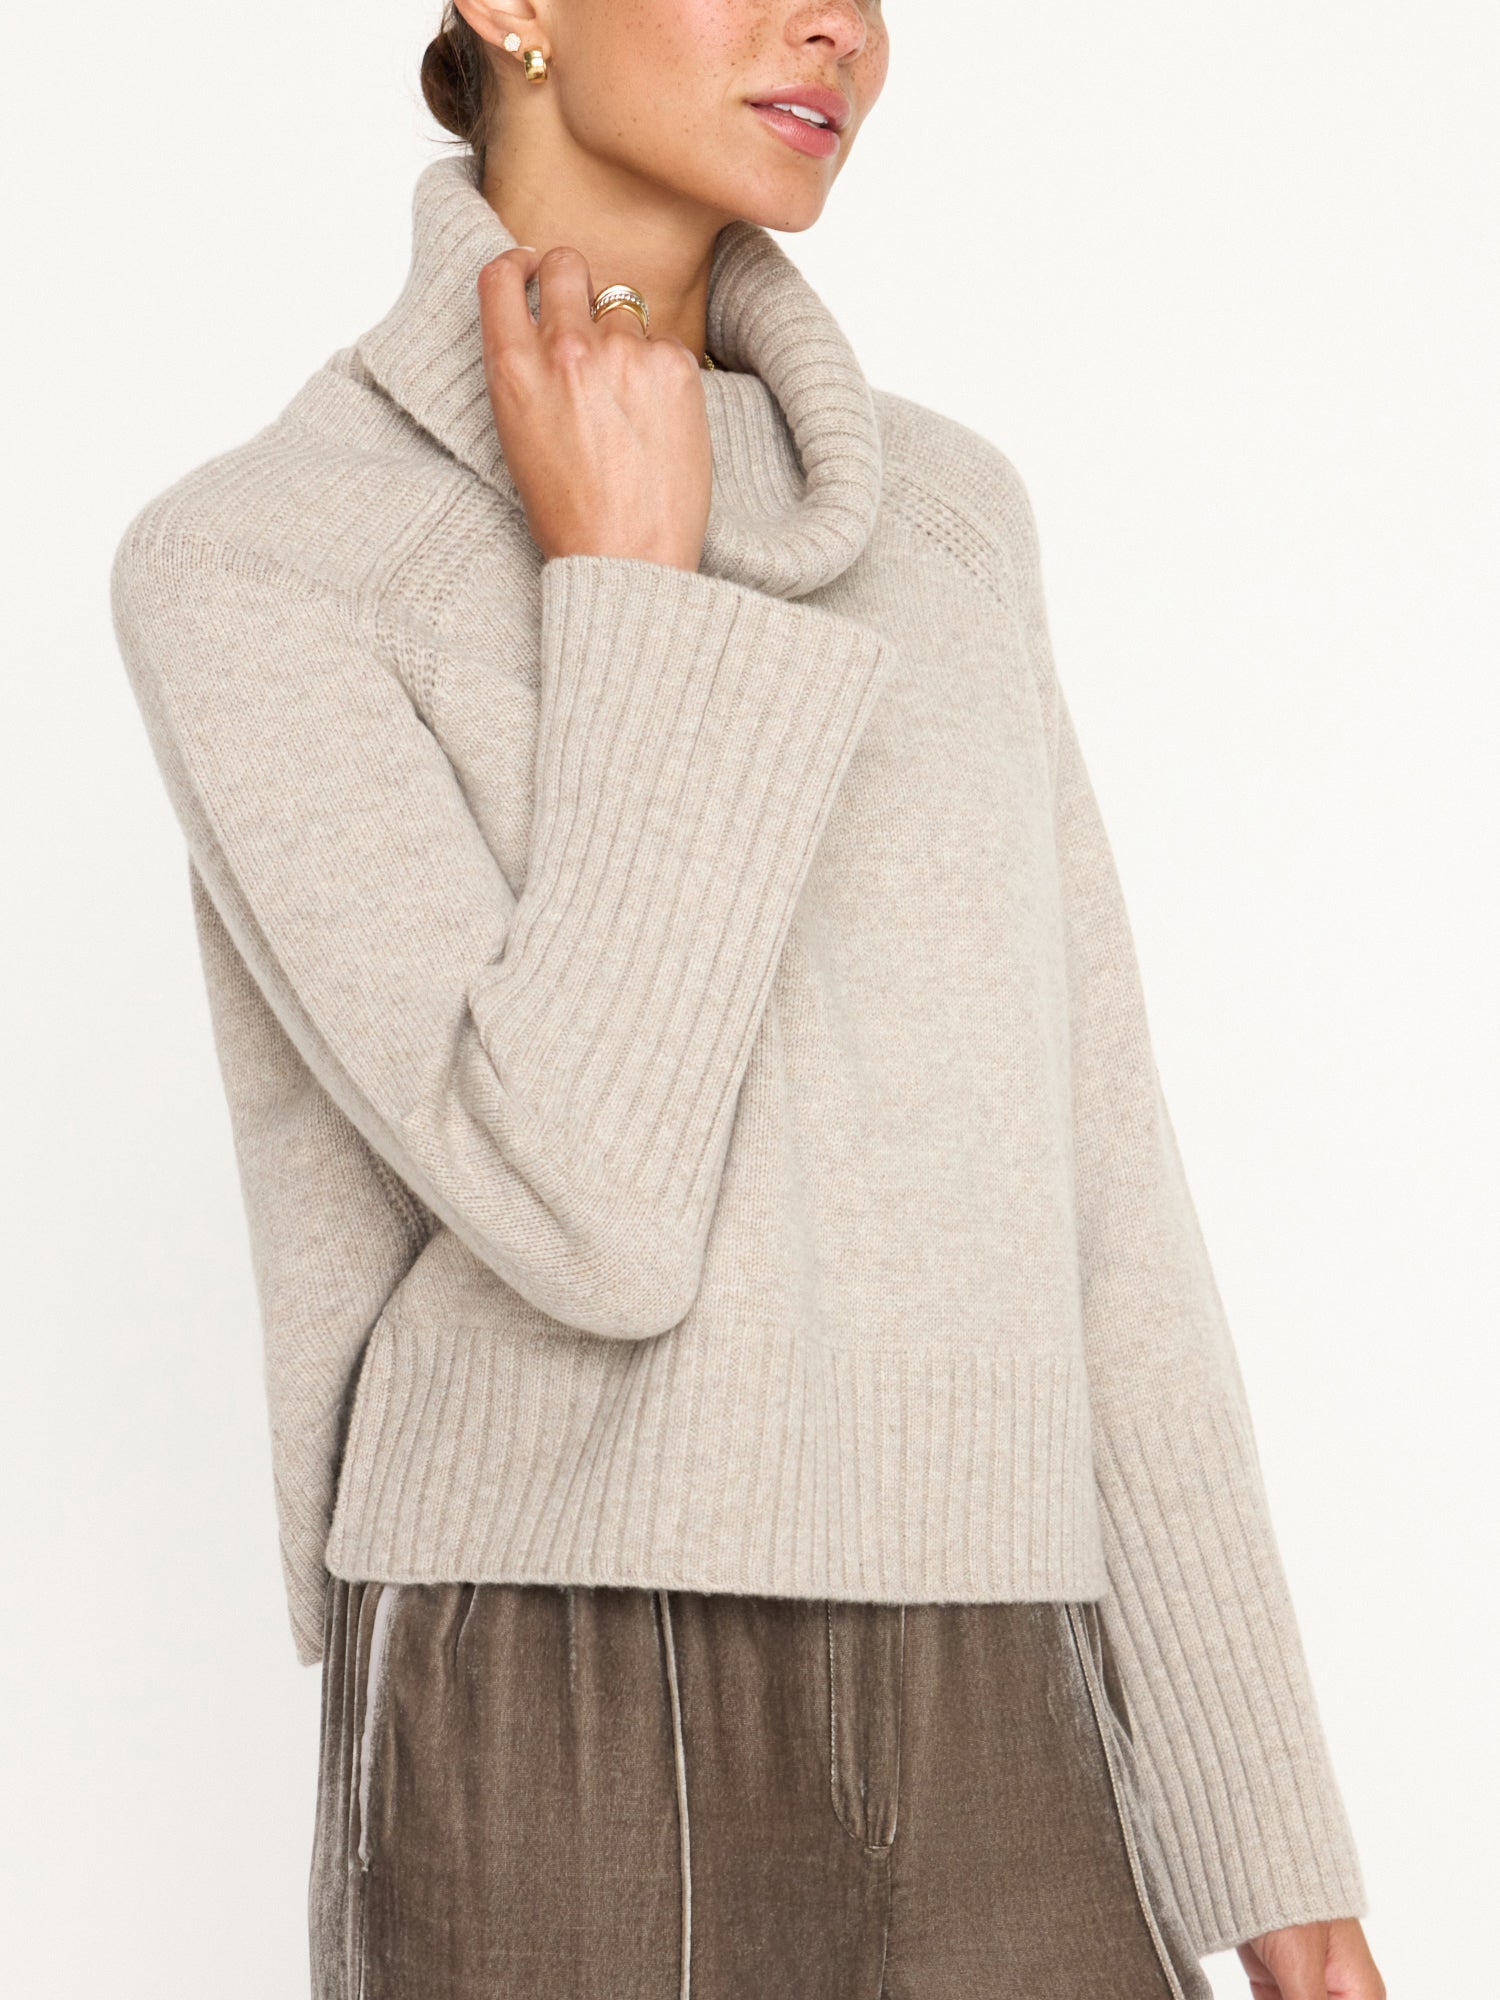 Brochu Walker | Women's Orion Turtleneck Sweater in Light Chia Mélange